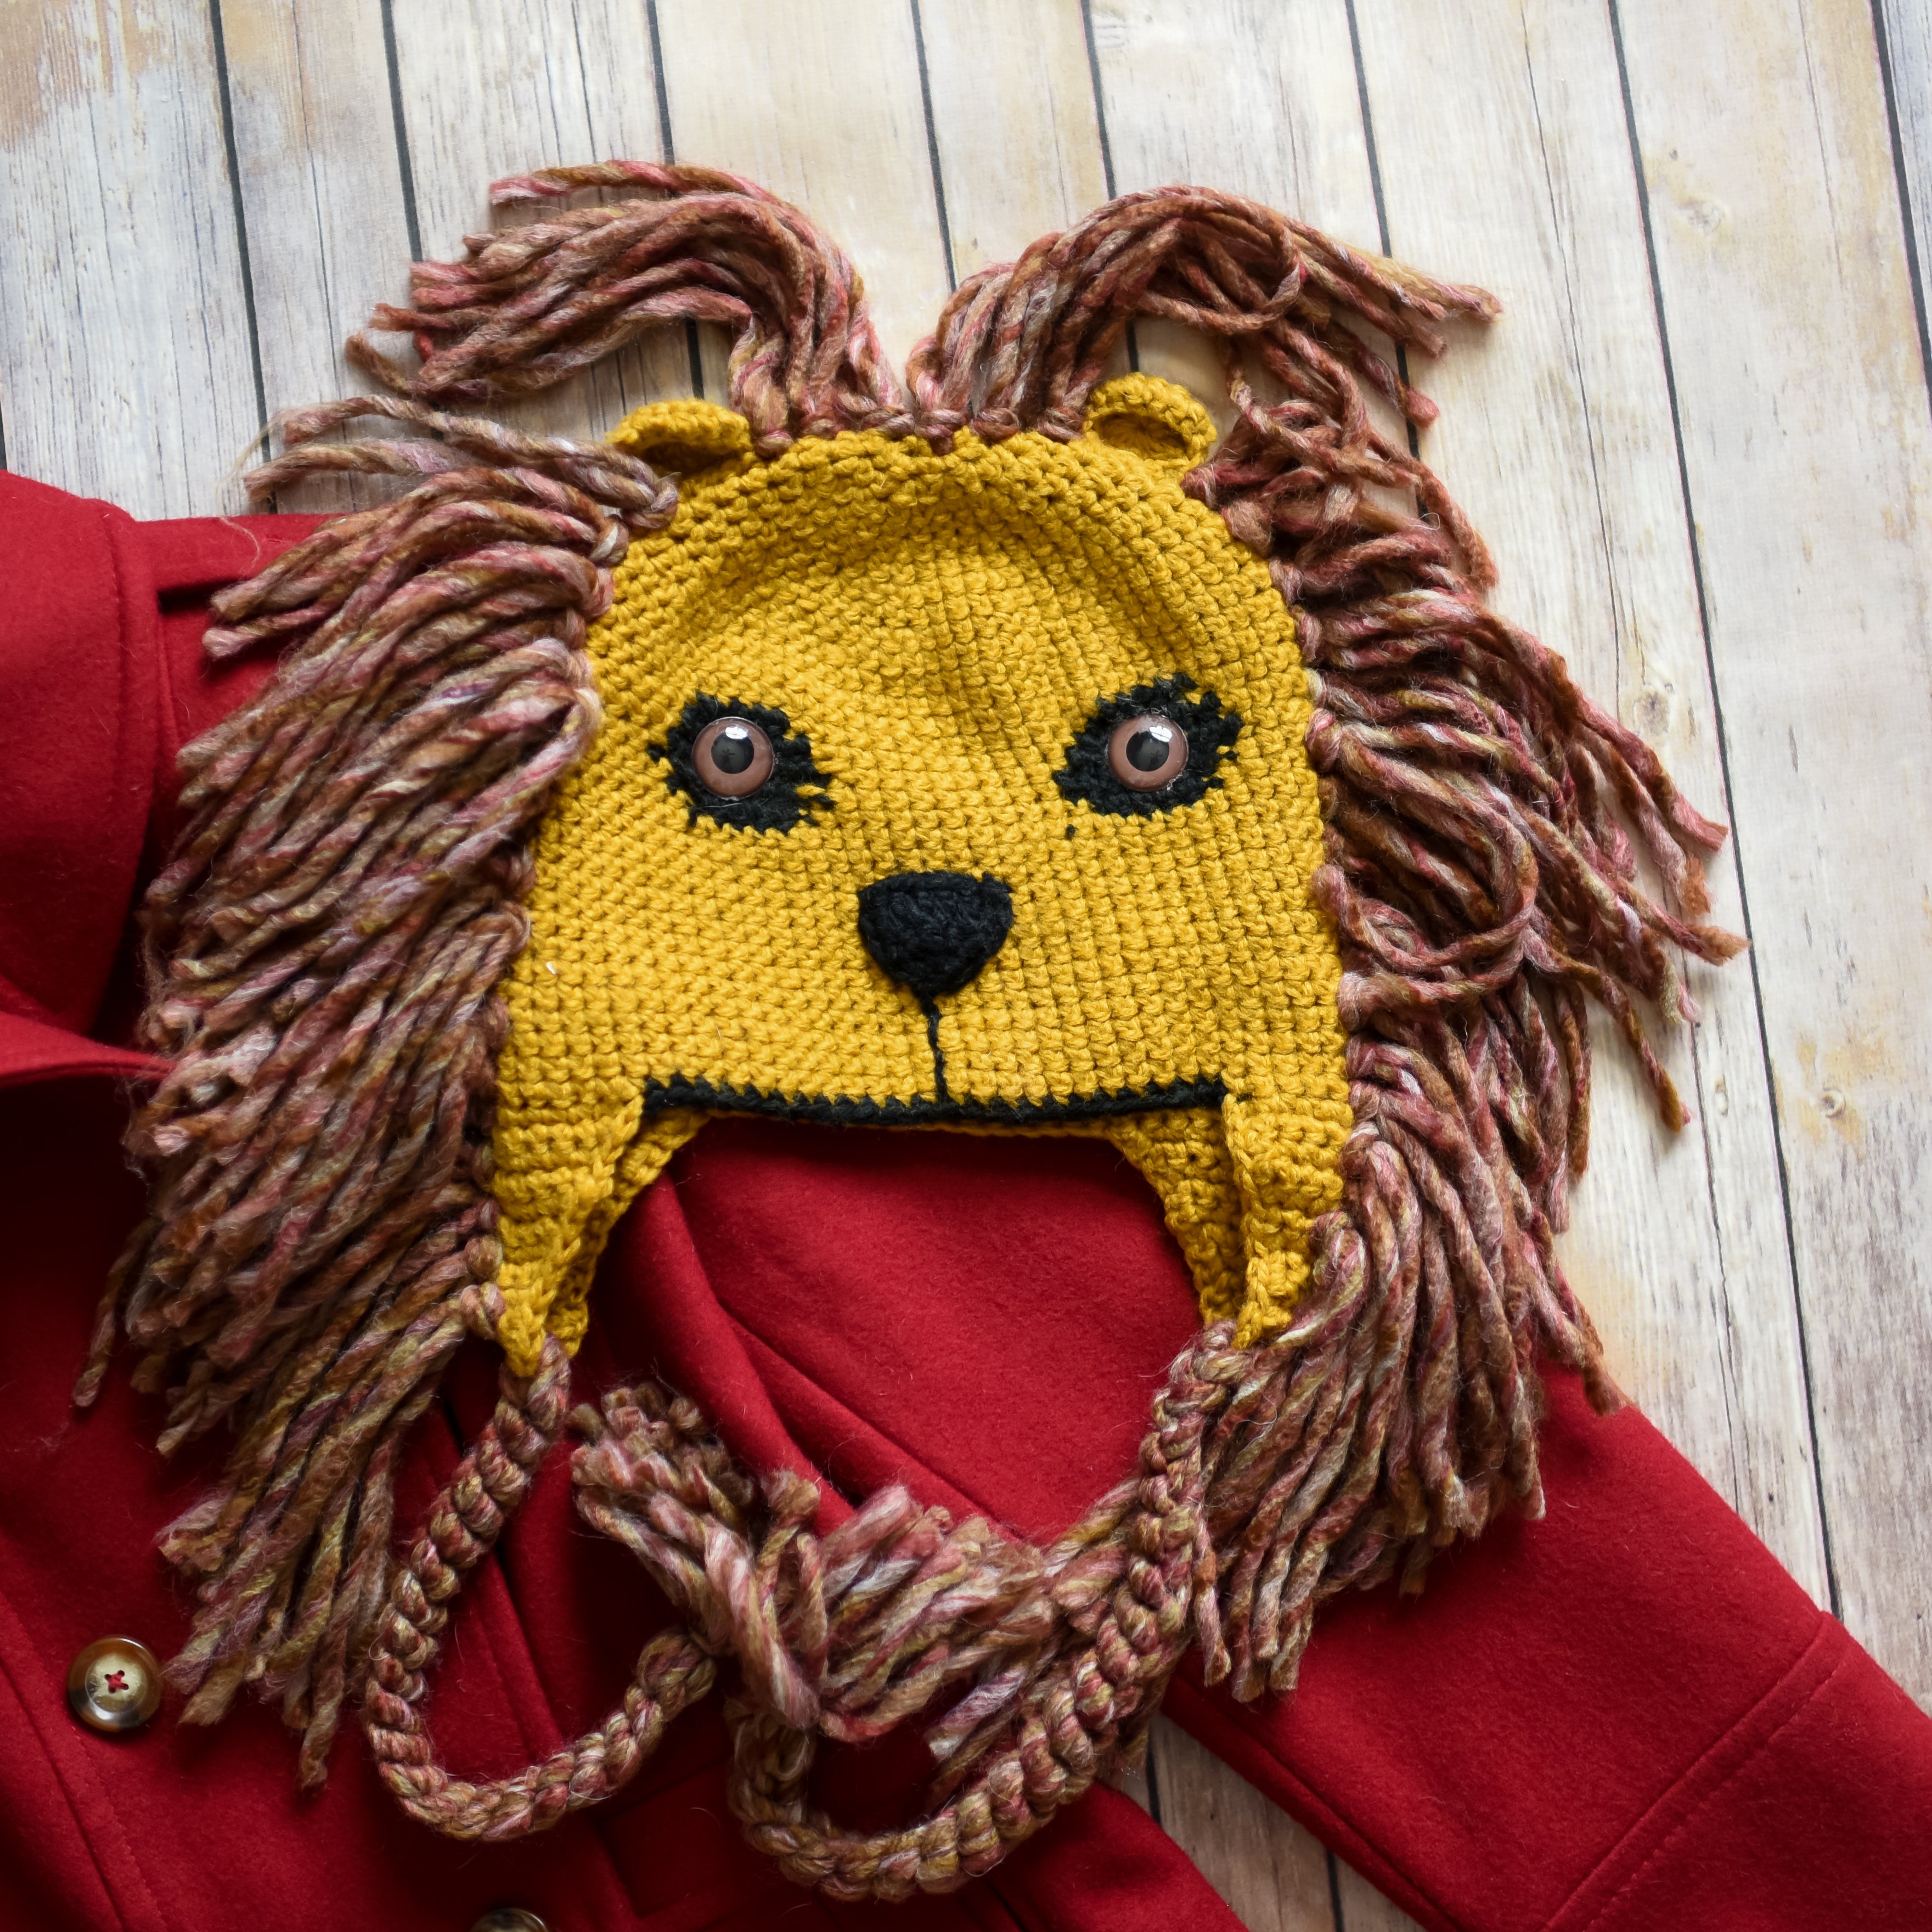 Mũ len sư tử là một phụ kiện thời trang độc đáo và vô cùng dễ thương. Nếu bạn là một người yêu sư tử và muốn sở hữu một chiếc mũ độc đáo, đến và xem mũ len sư tử này thôi.